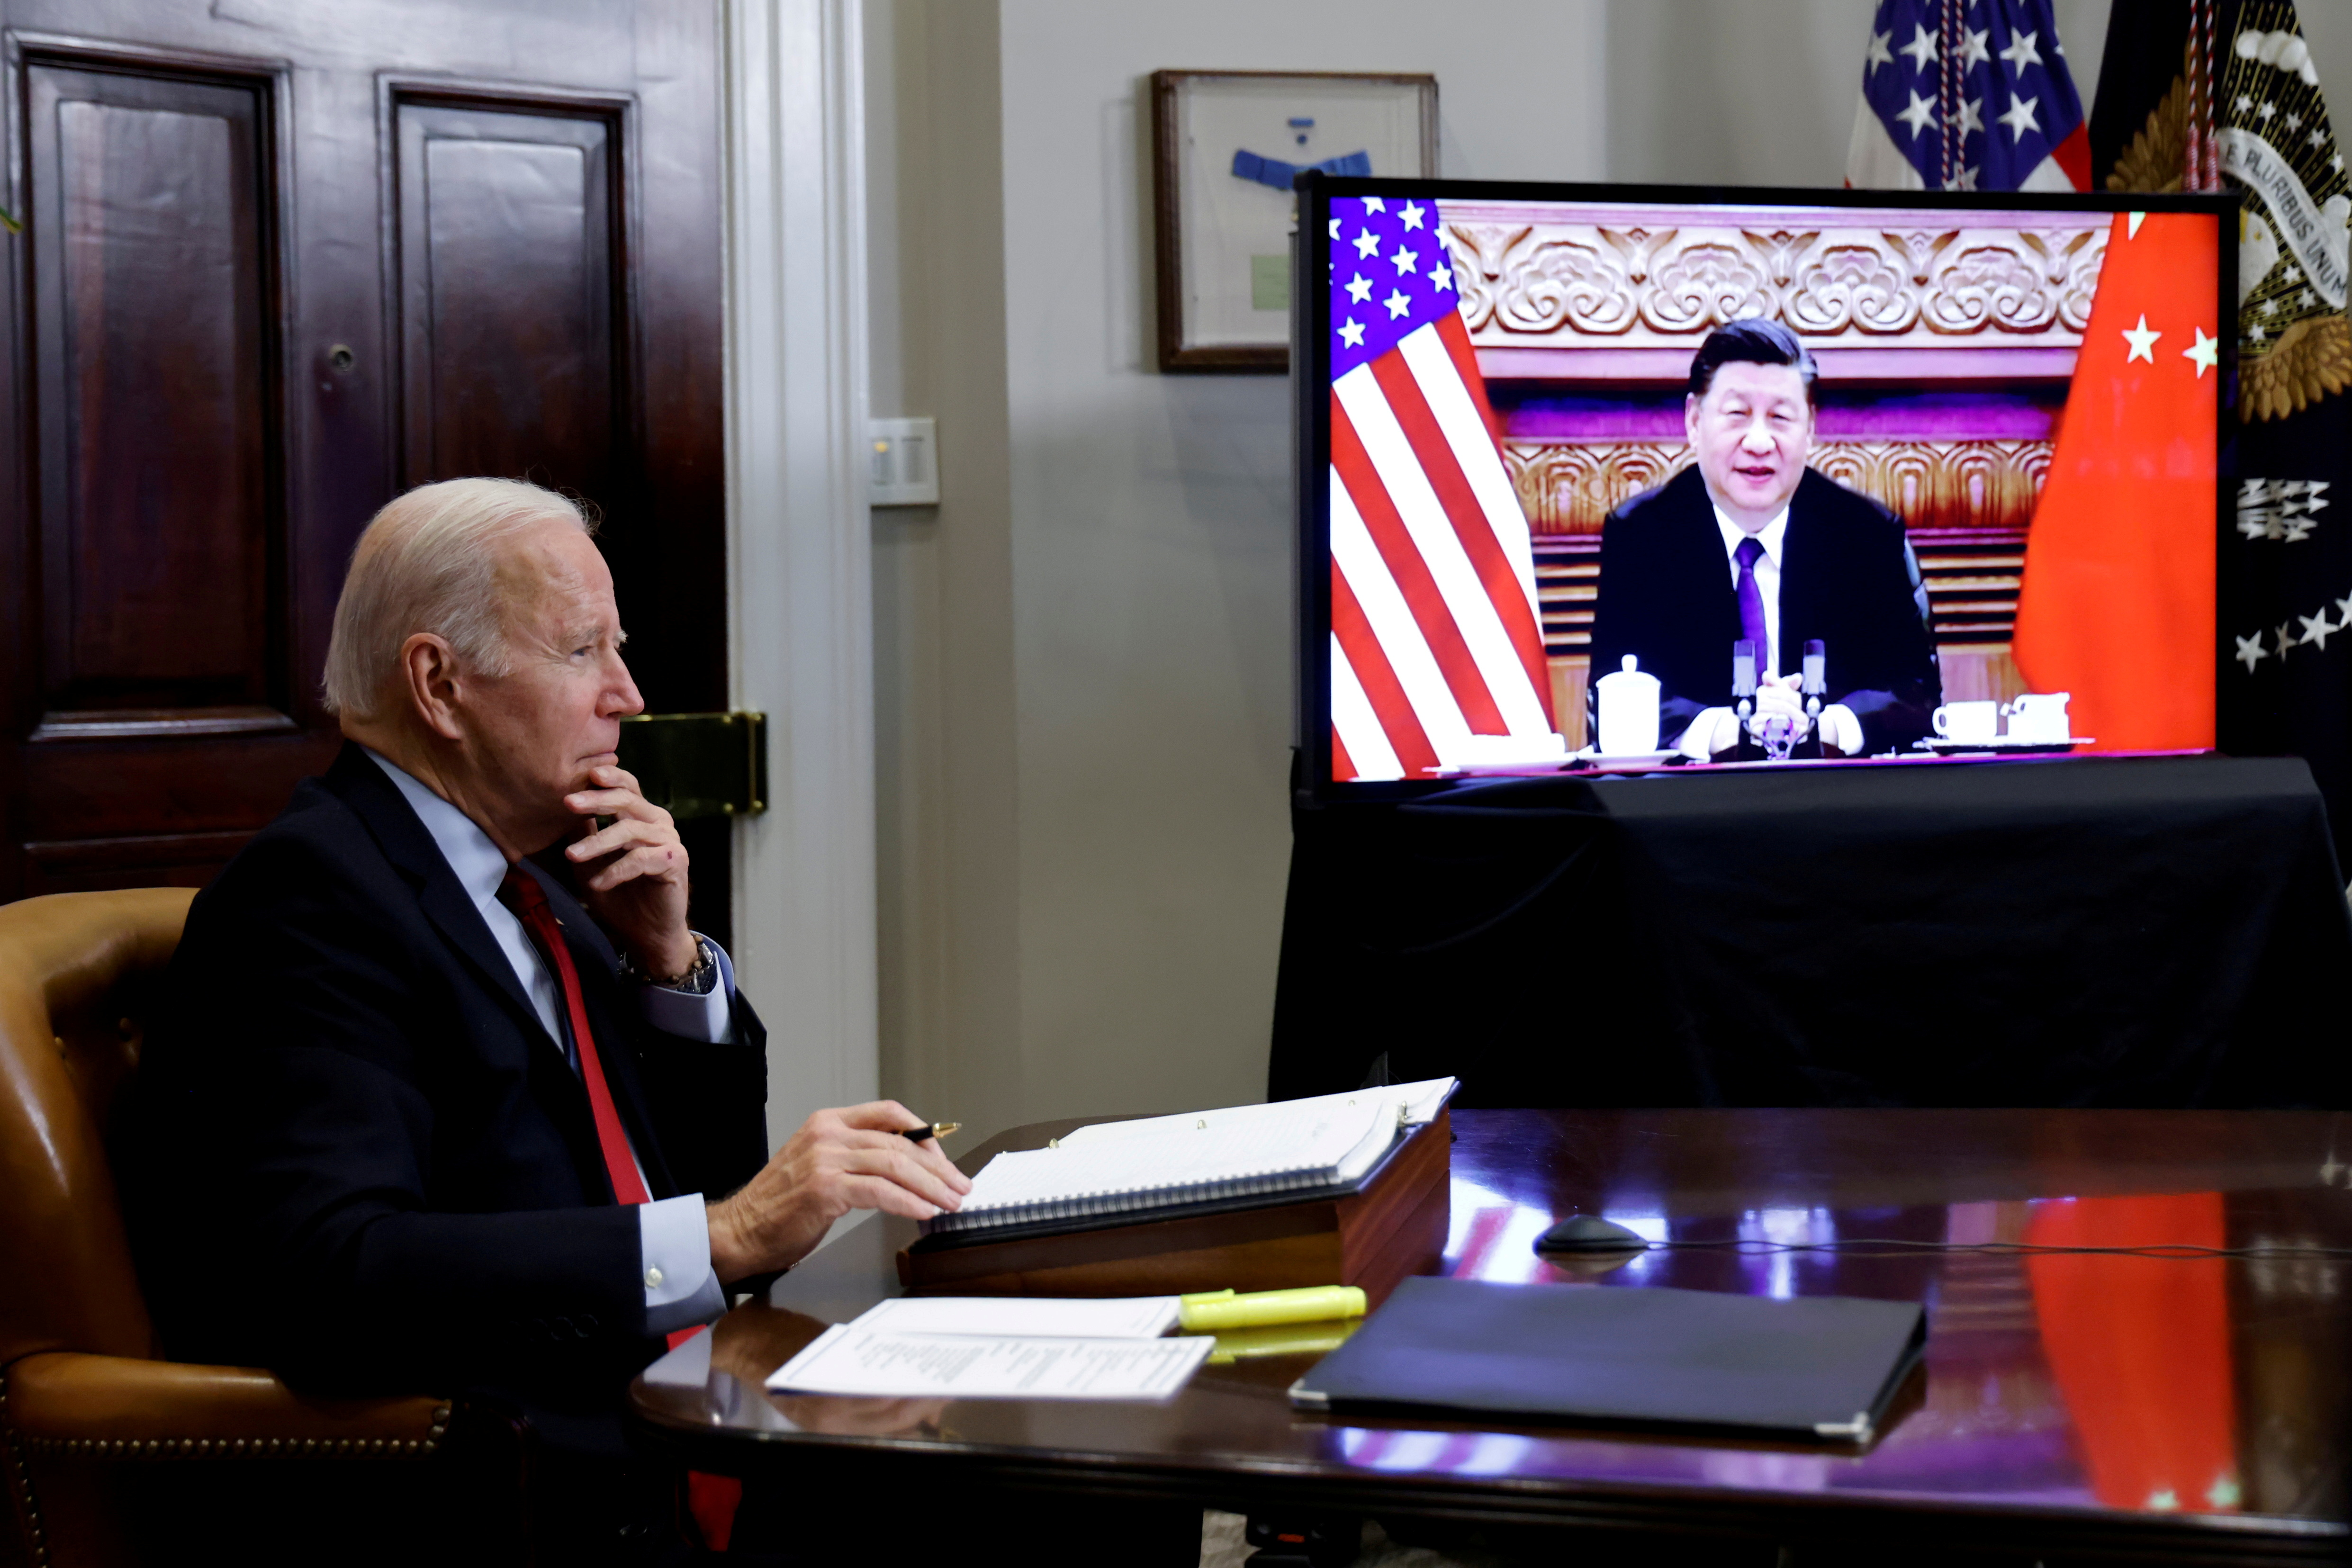  El presidente de Estados Unidos, Joe Biden, habla virtualmente con el líder chino Xi Jinping desde la Casa Blanca en Washington (REUTERS/Jonathan Ernst)